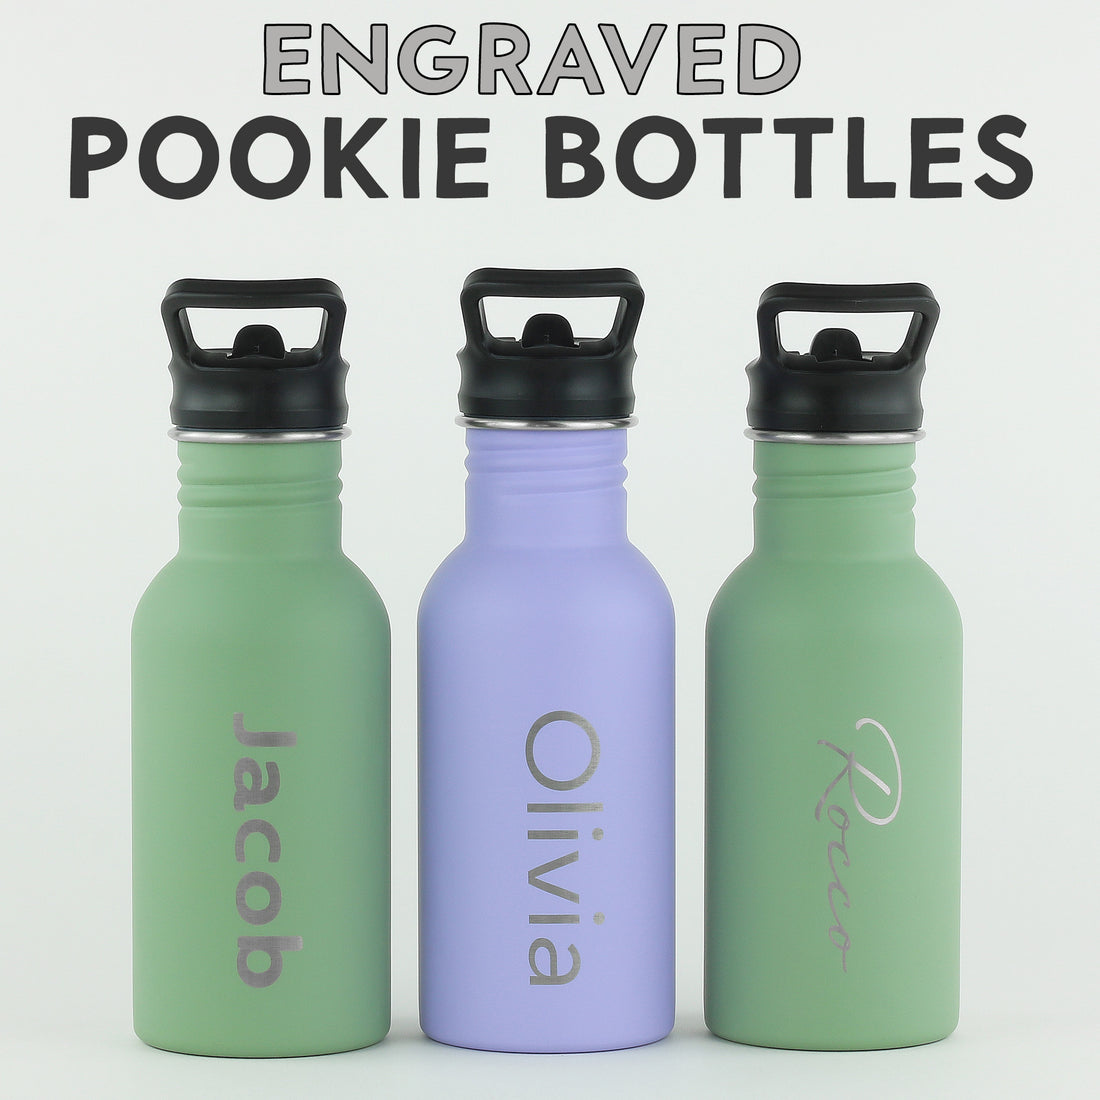 Engraved Pookie Bottles